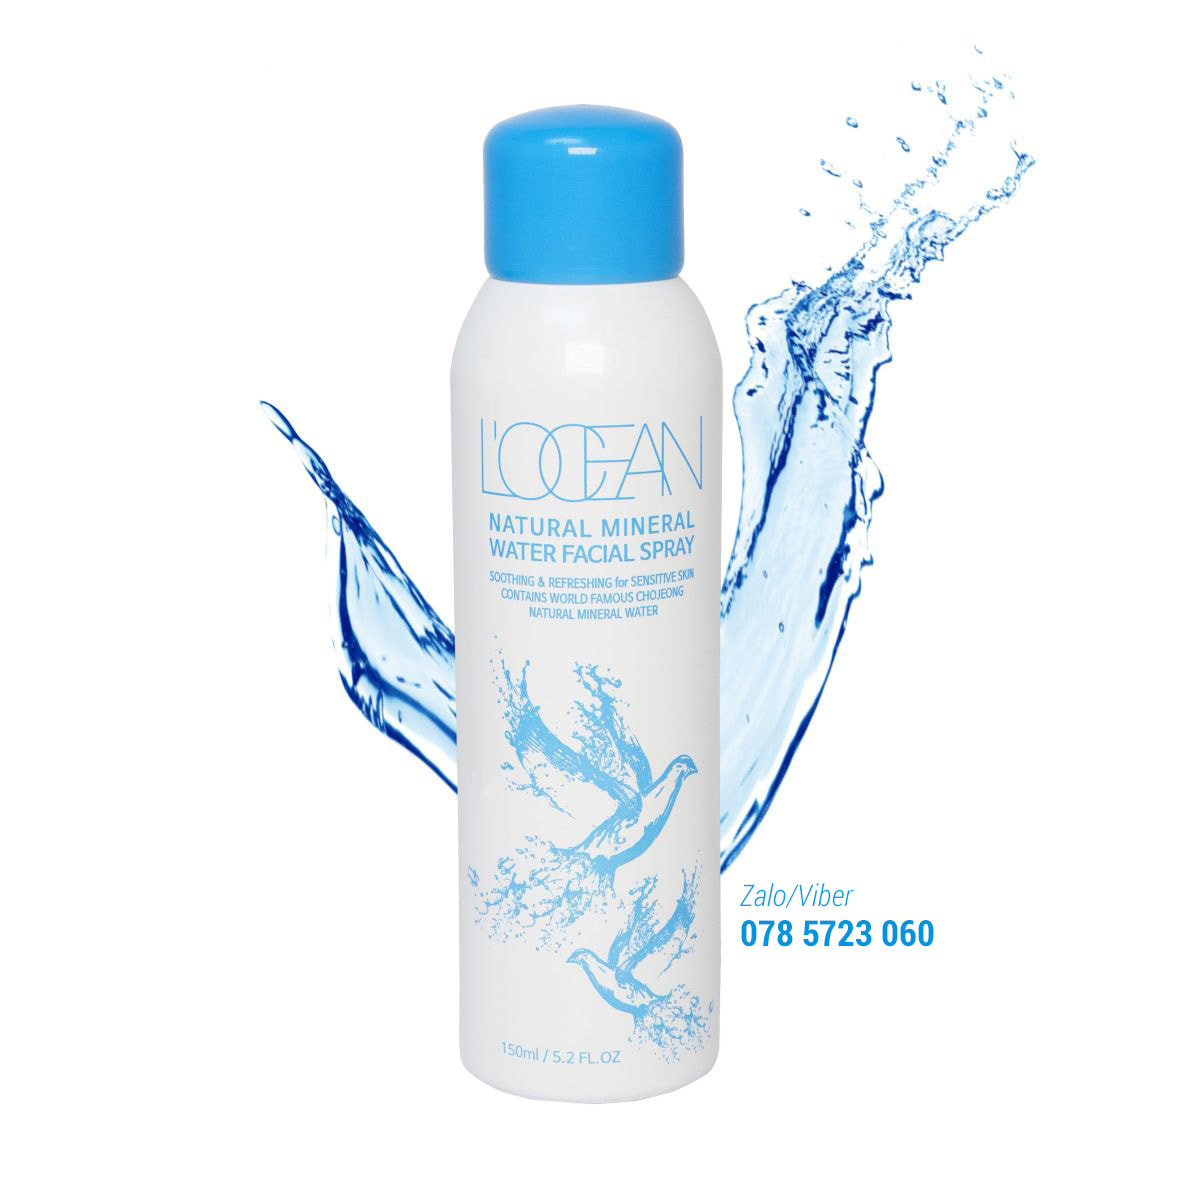 Xịt khoáng thiên nhiên L'ocean Chojeong Natural Mineral Water Facial Spray